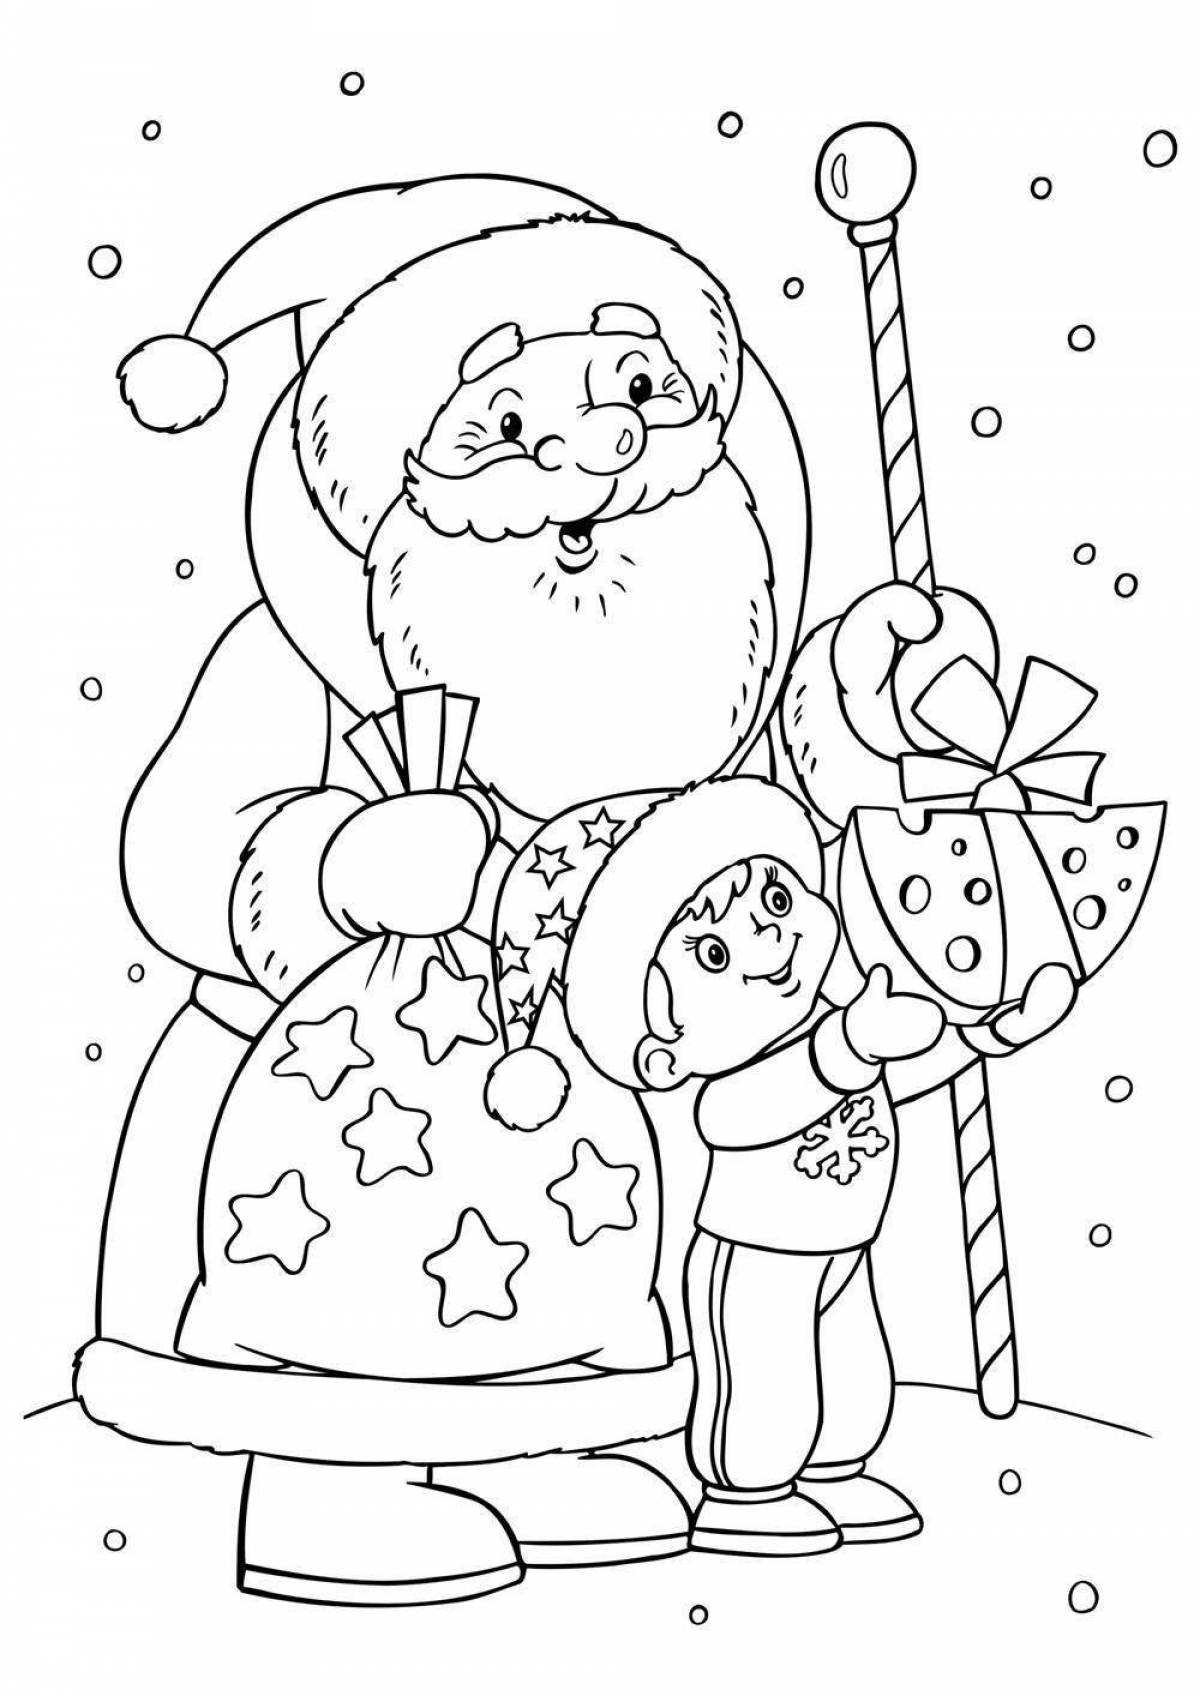 Magic coloring santa claus for kids